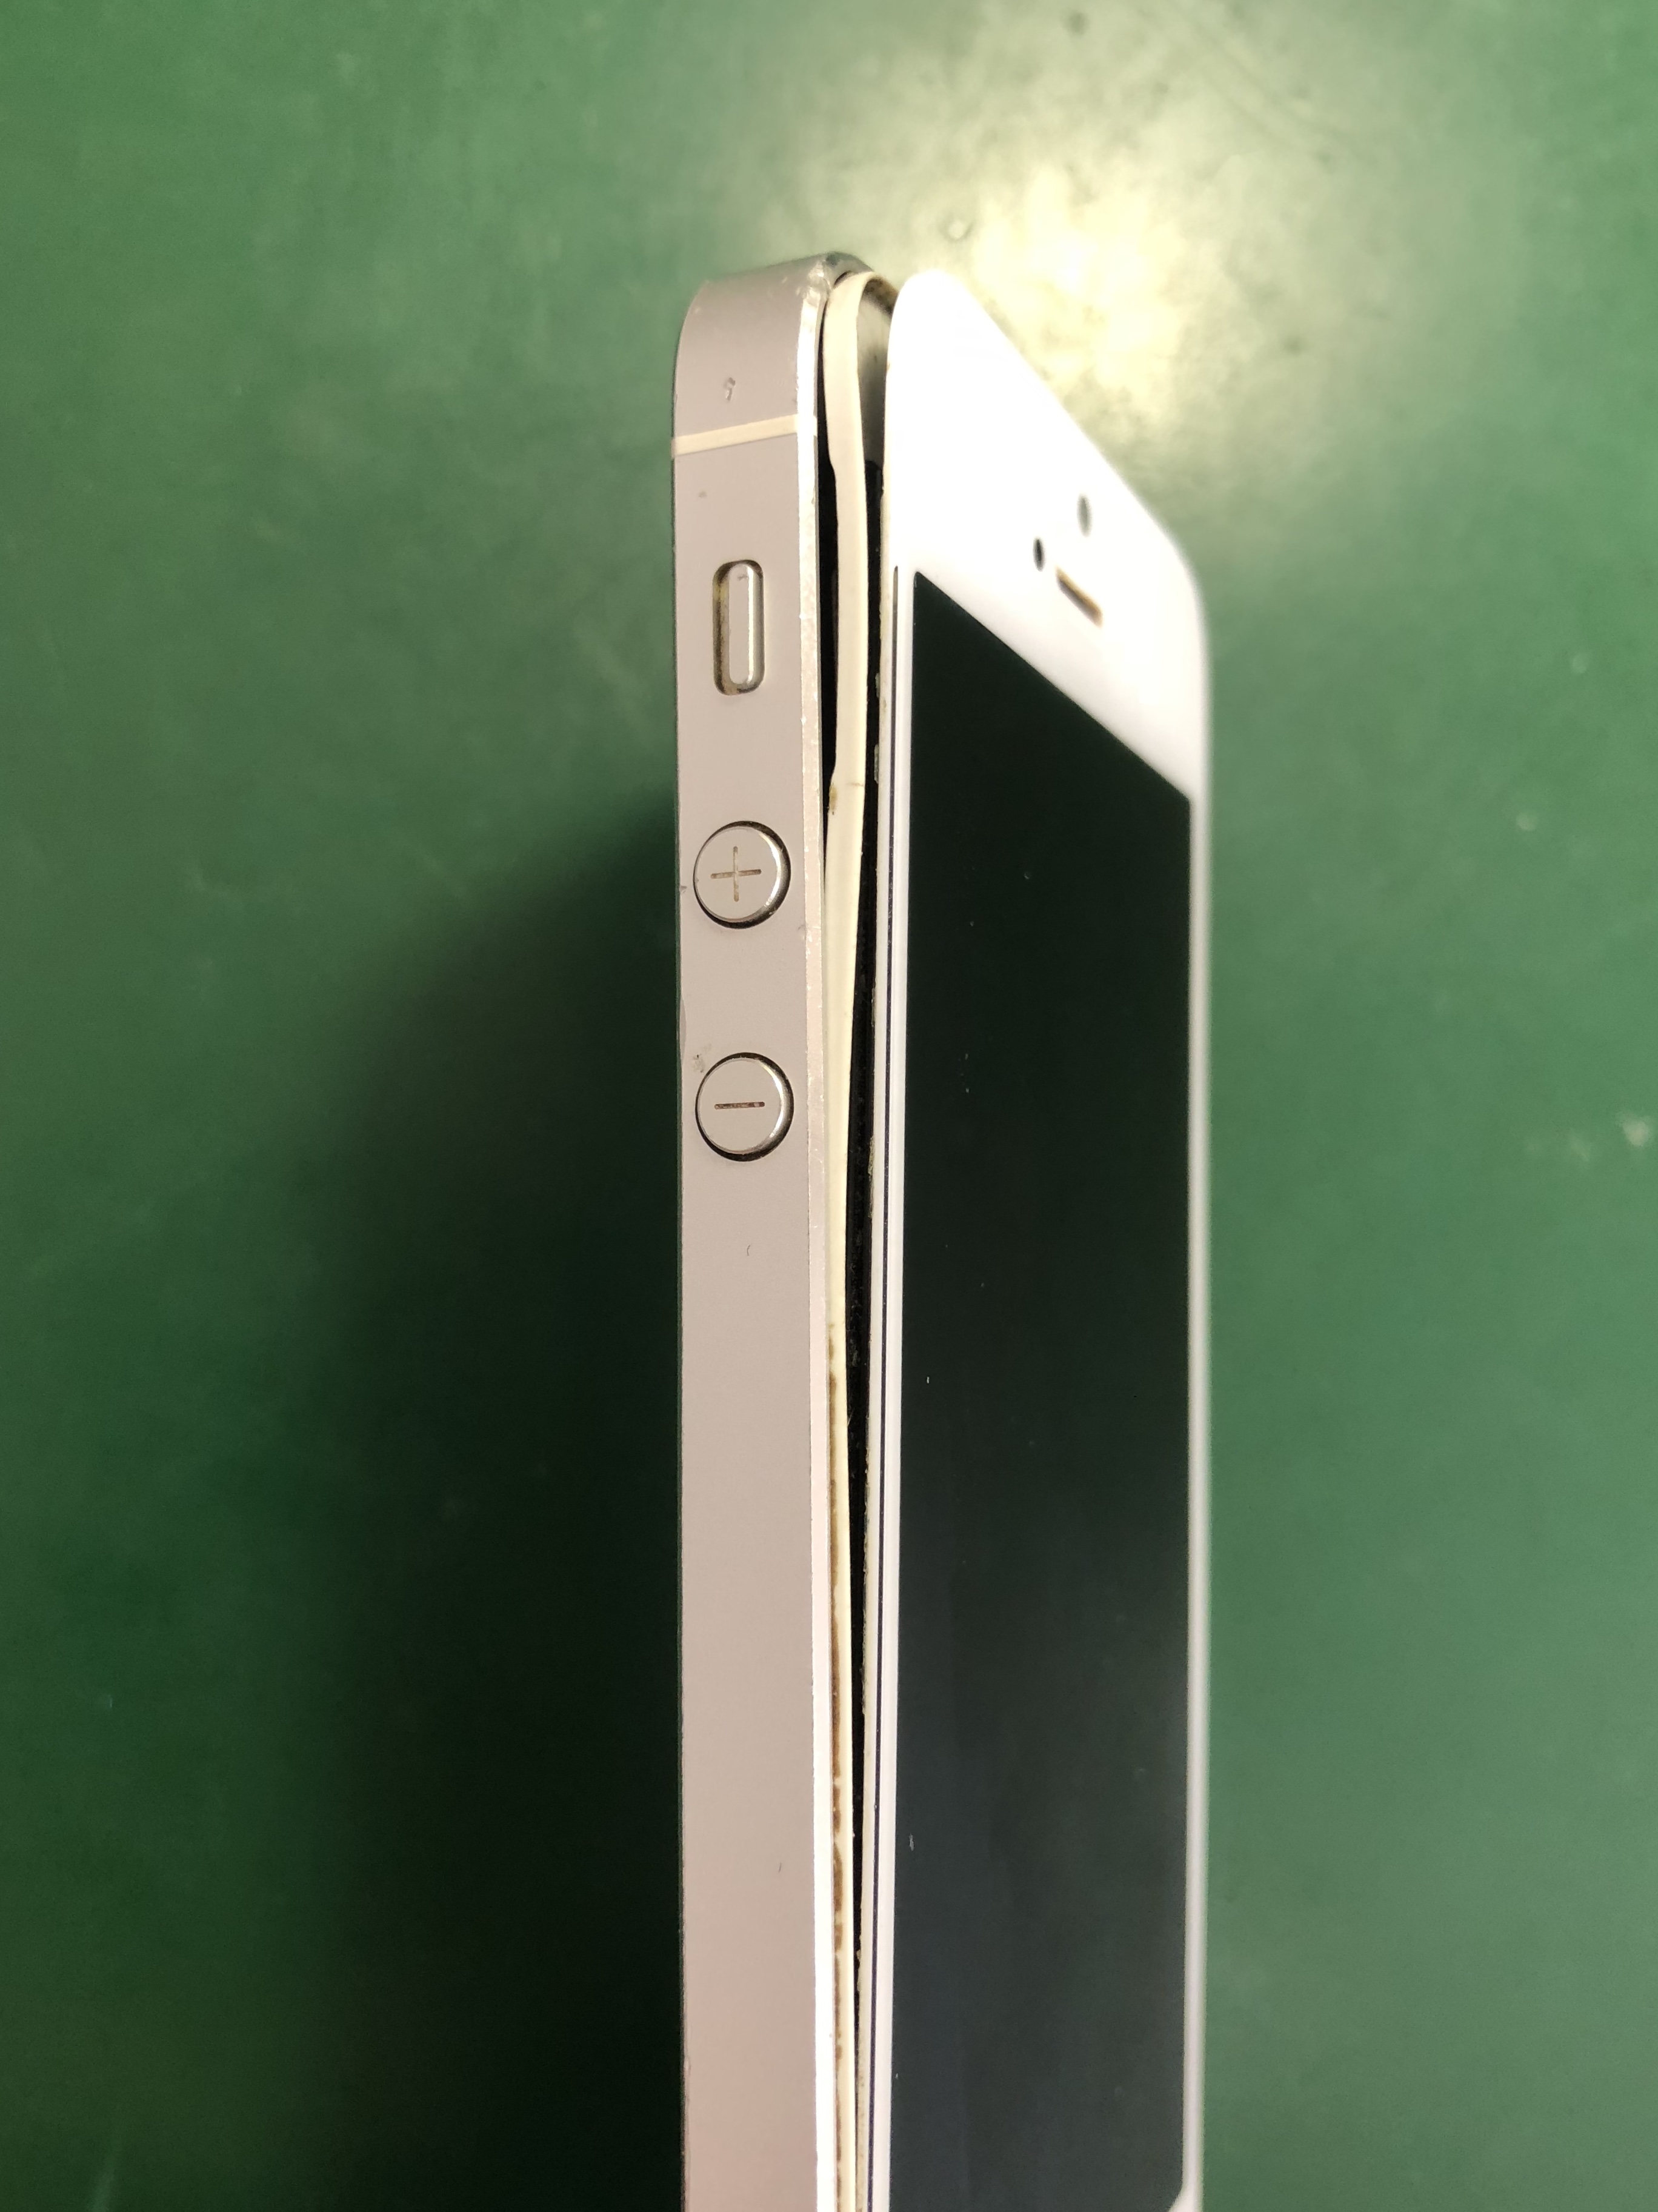 パネルが剥がれそうなiphone5 Iphone修理 遠賀 水巻店